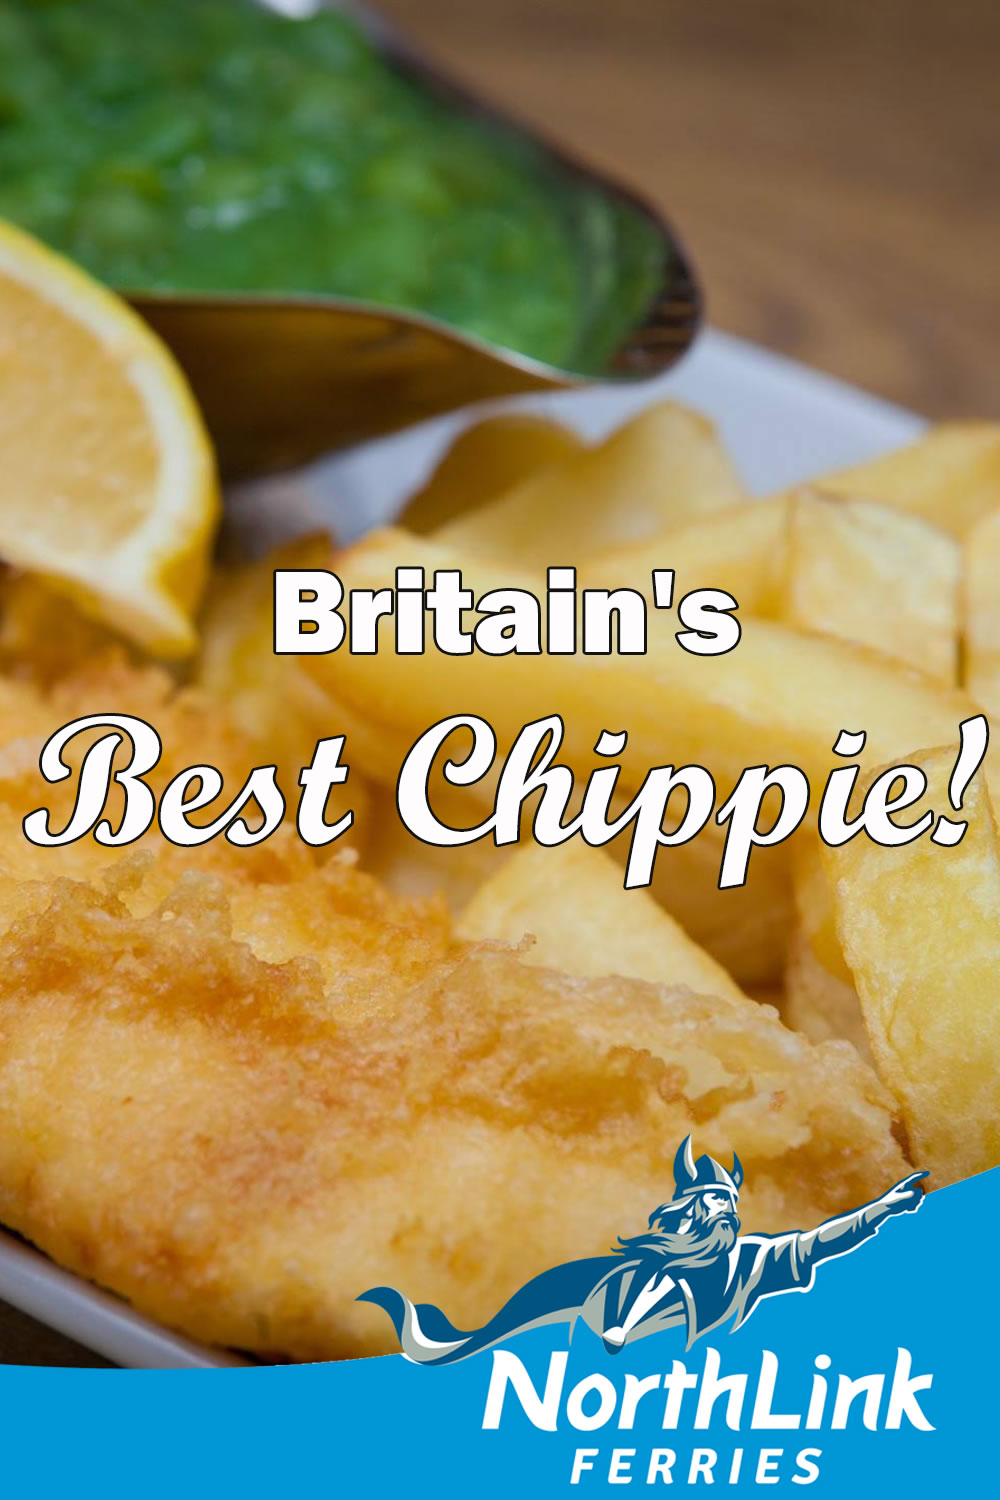 Britain's Best Chippie!